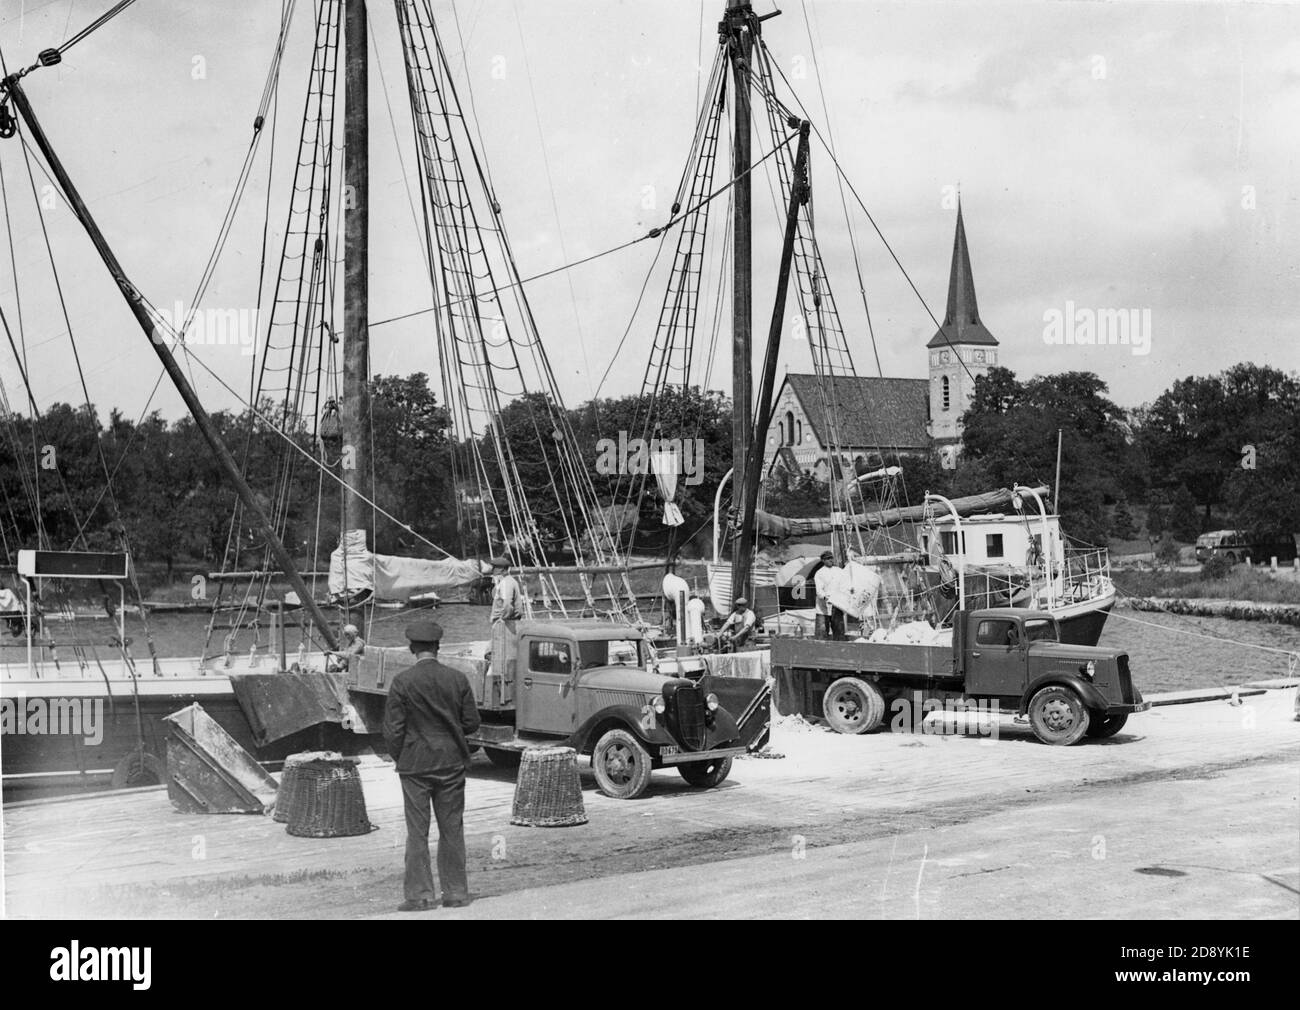 Historische und alte Bilder von Gustavsberg, Stockholm, Schweden. Weltweit bekannt für sein Porzellan. Dies ist die Kirche und der Hafen von Gustafsberg. Stockfoto